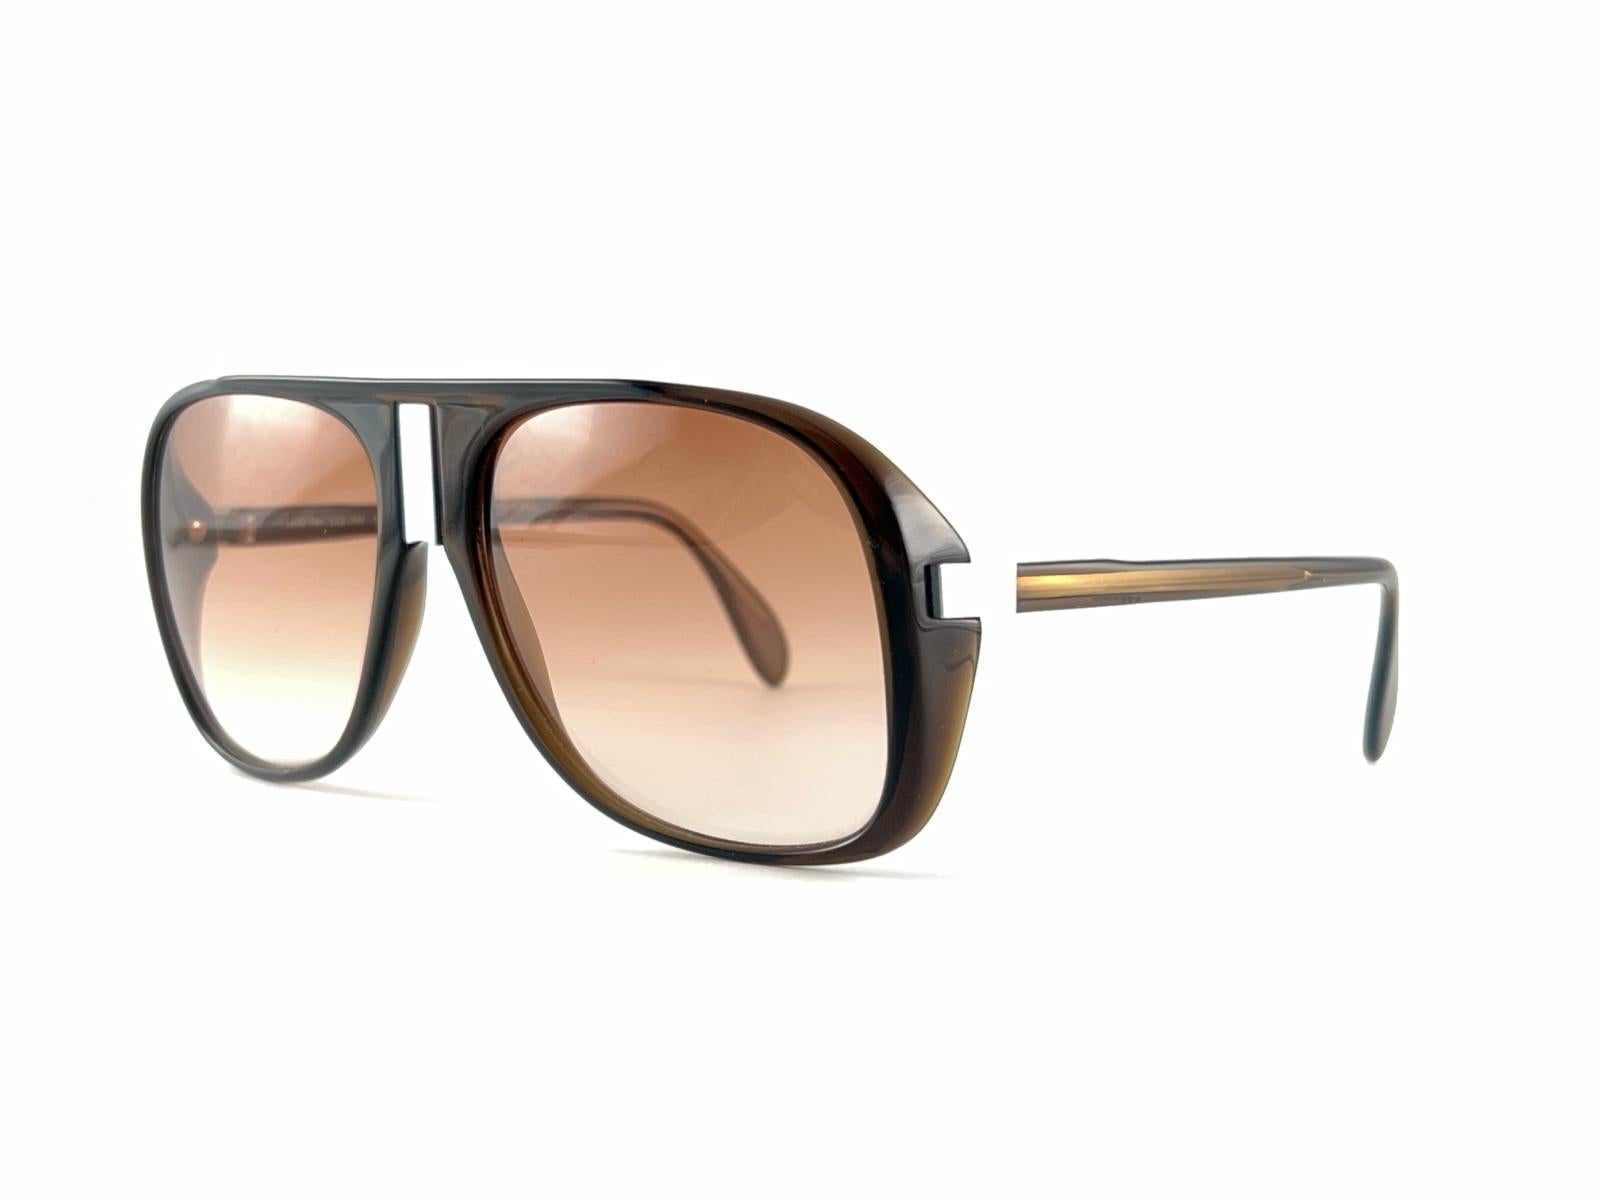 
Funky Und Uber Cool Silhouette Sunglasses.Oversized Translucent Brown Frame hält ein Paar von Spotless Medium Translucent Brown Lenses.
Frame Mai zeigen leichte Abnutzung von 40 Jahren der Lagerung.
Hervorragende Qualität,  Noch besseres